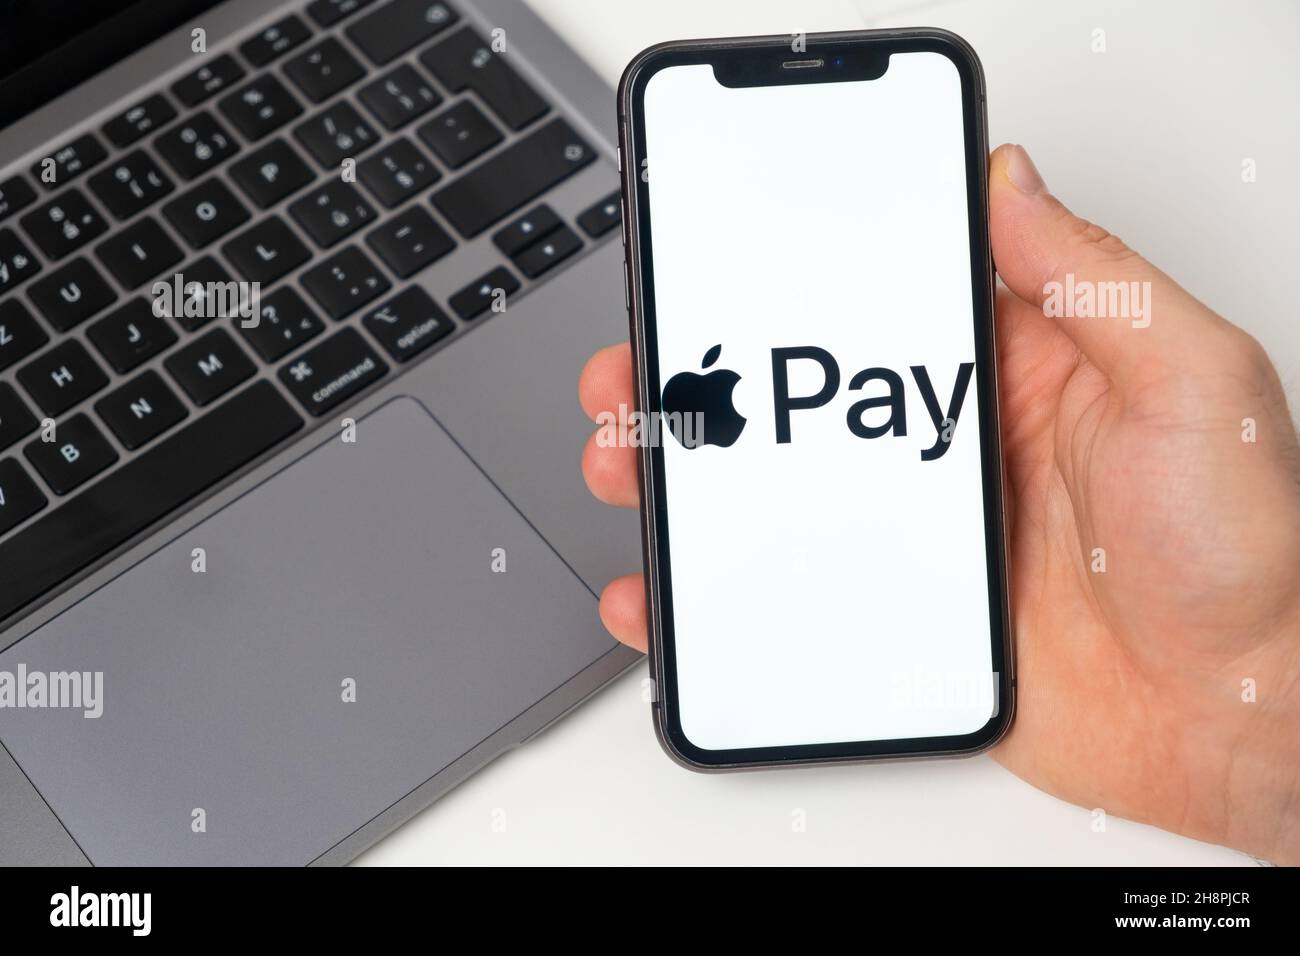 Apple Pay: Sử dụng Apple Pay để thanh toán giờ đây trở nên dễ dàng hơn bao giờ hết. Với một cú chạm duy nhất trên điện thoại của bạn, bạn có thể thanh toán mọi thứ một cách nhanh chóng và an toàn. Xem hình ảnh liên quan để khám phá thêm về Apple Pay và tận hưởng trải nghiệm thanh toán tuyệt vời nhất.